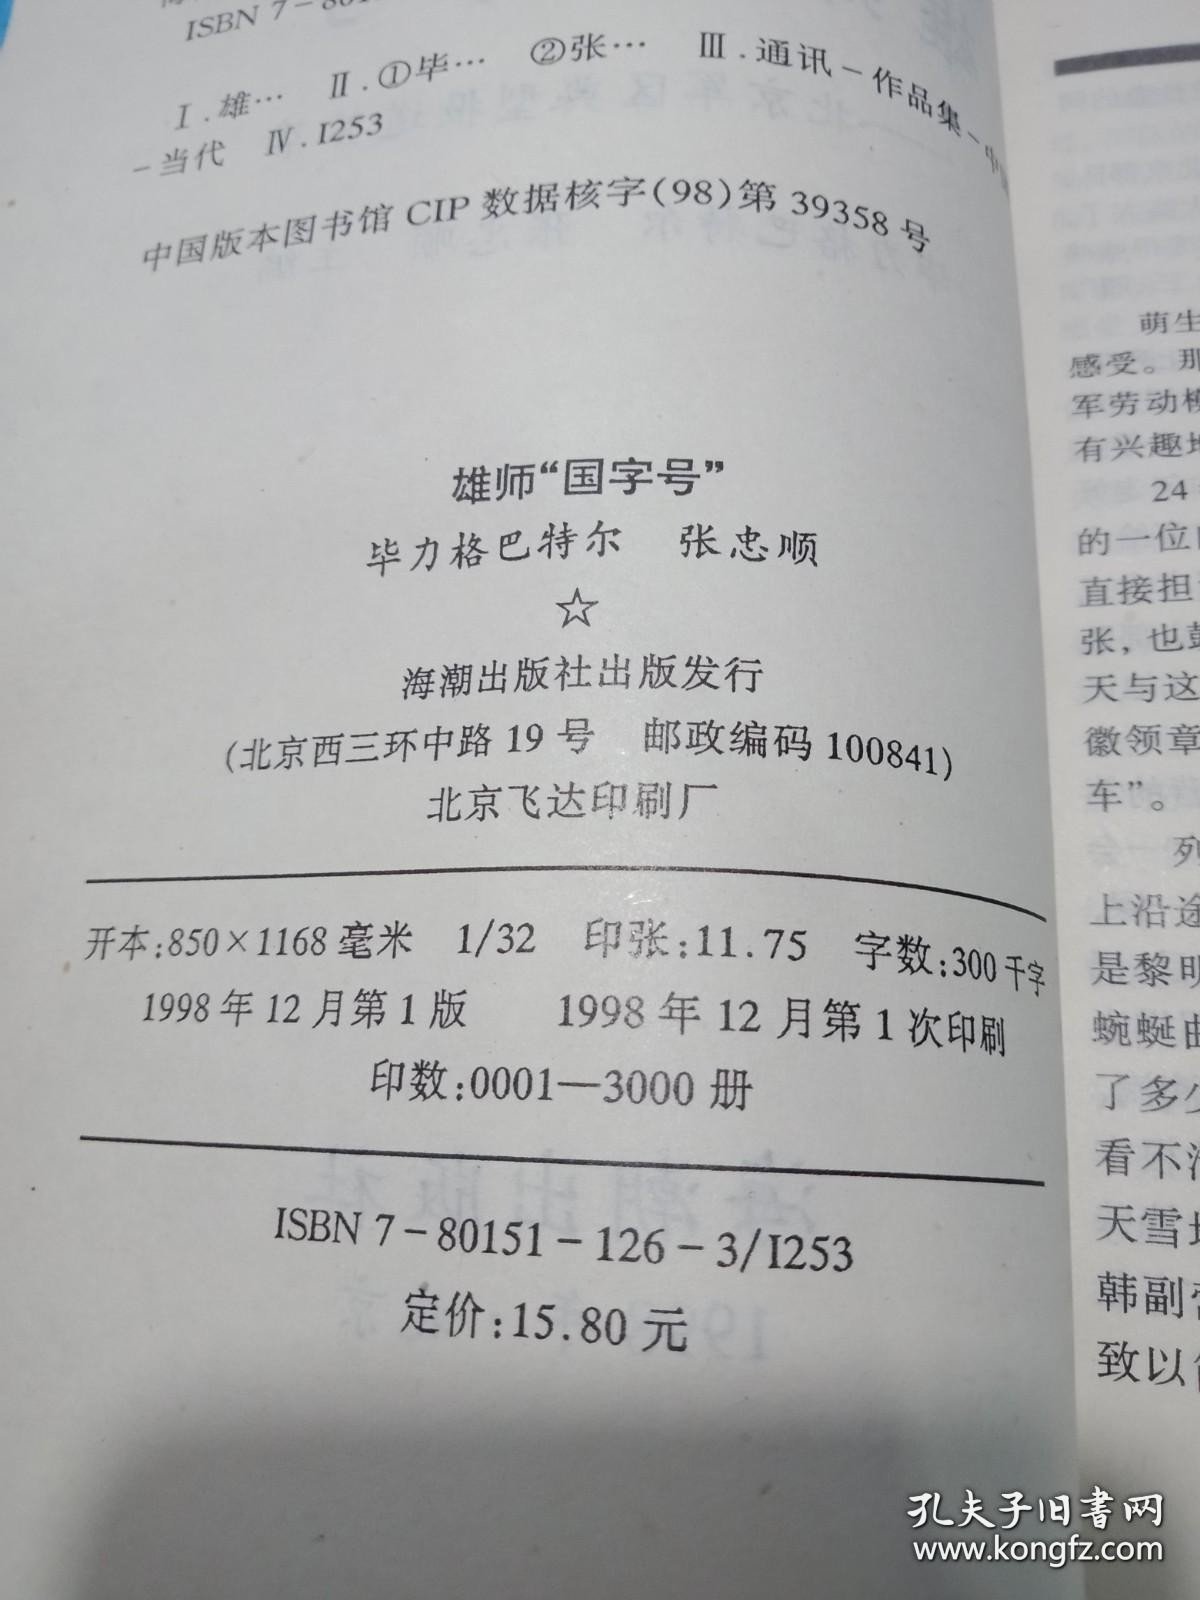 1978—1998雄狮“国字号”——北京军区典型报道荟萃